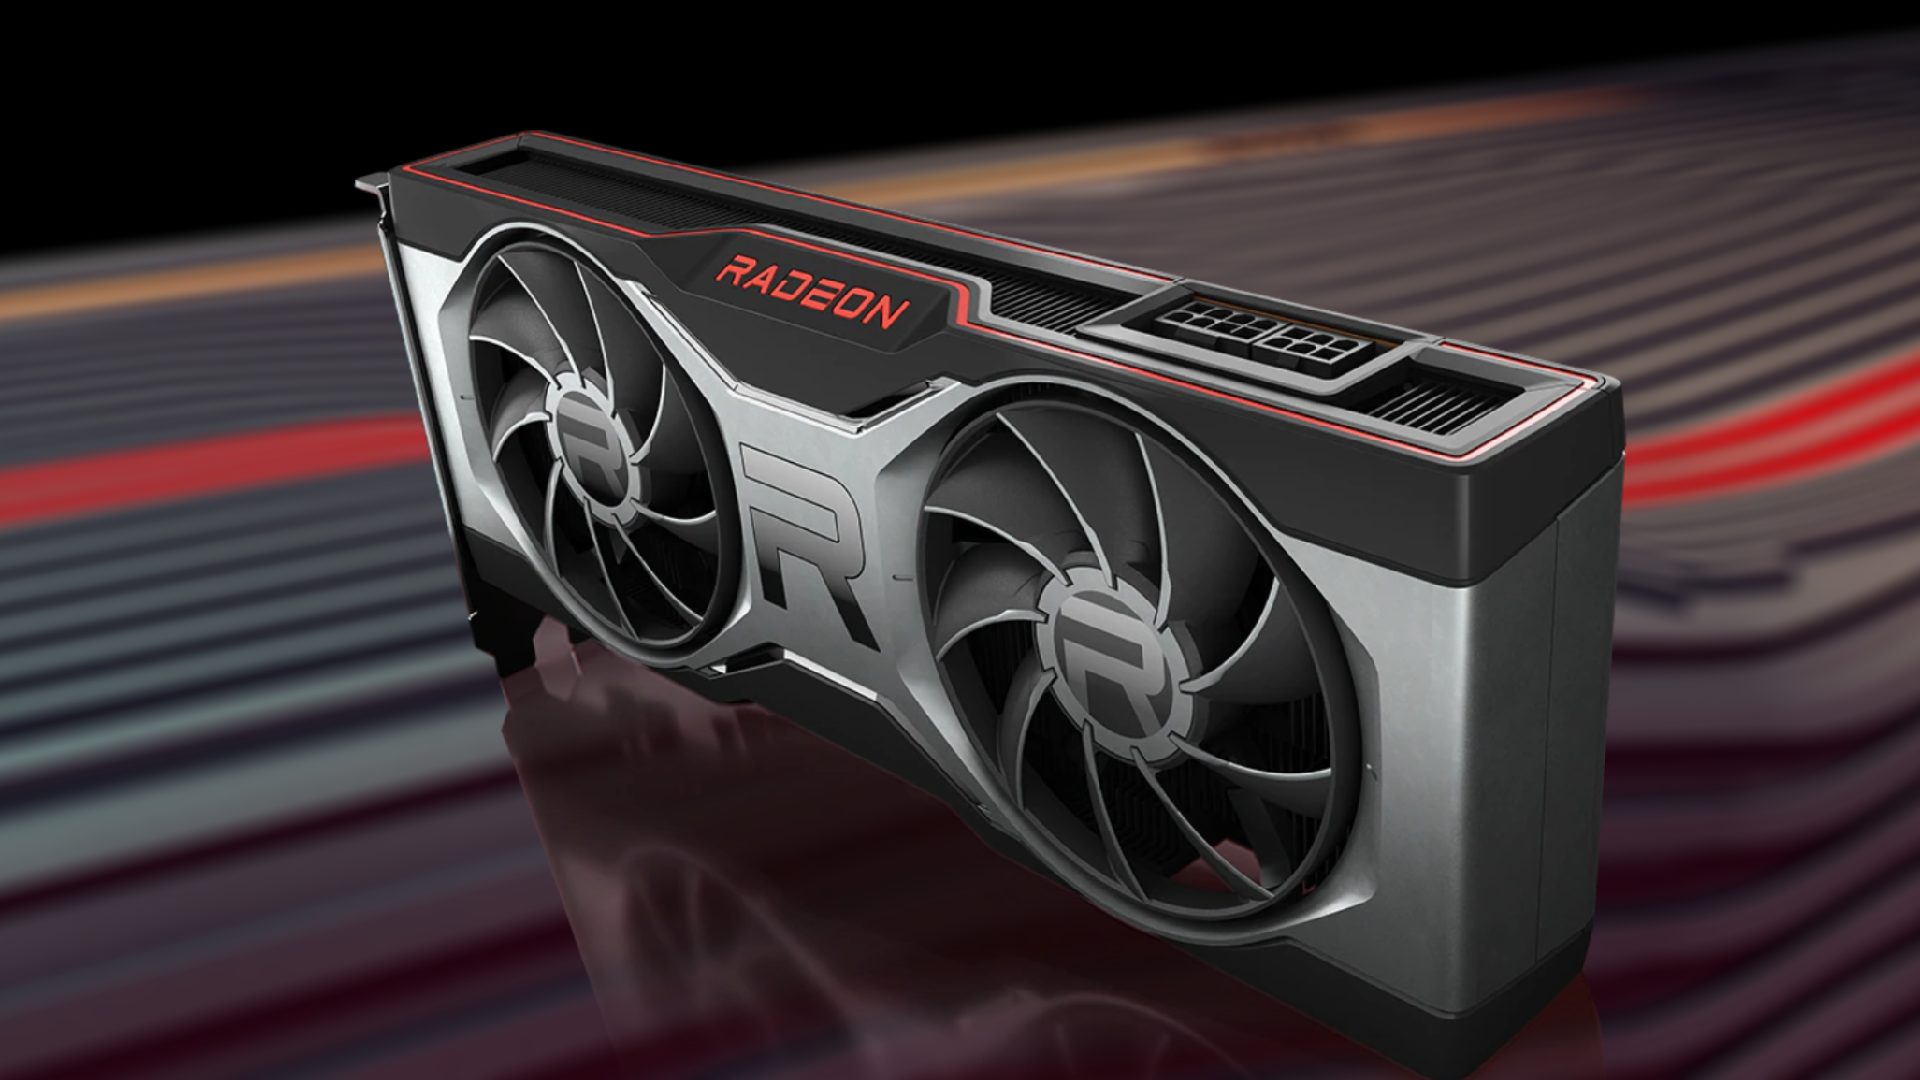 Відеокарти Radeon RX 7900 XTX нагріваються до 110 градусів. Але AMD запевняє, що це нормально